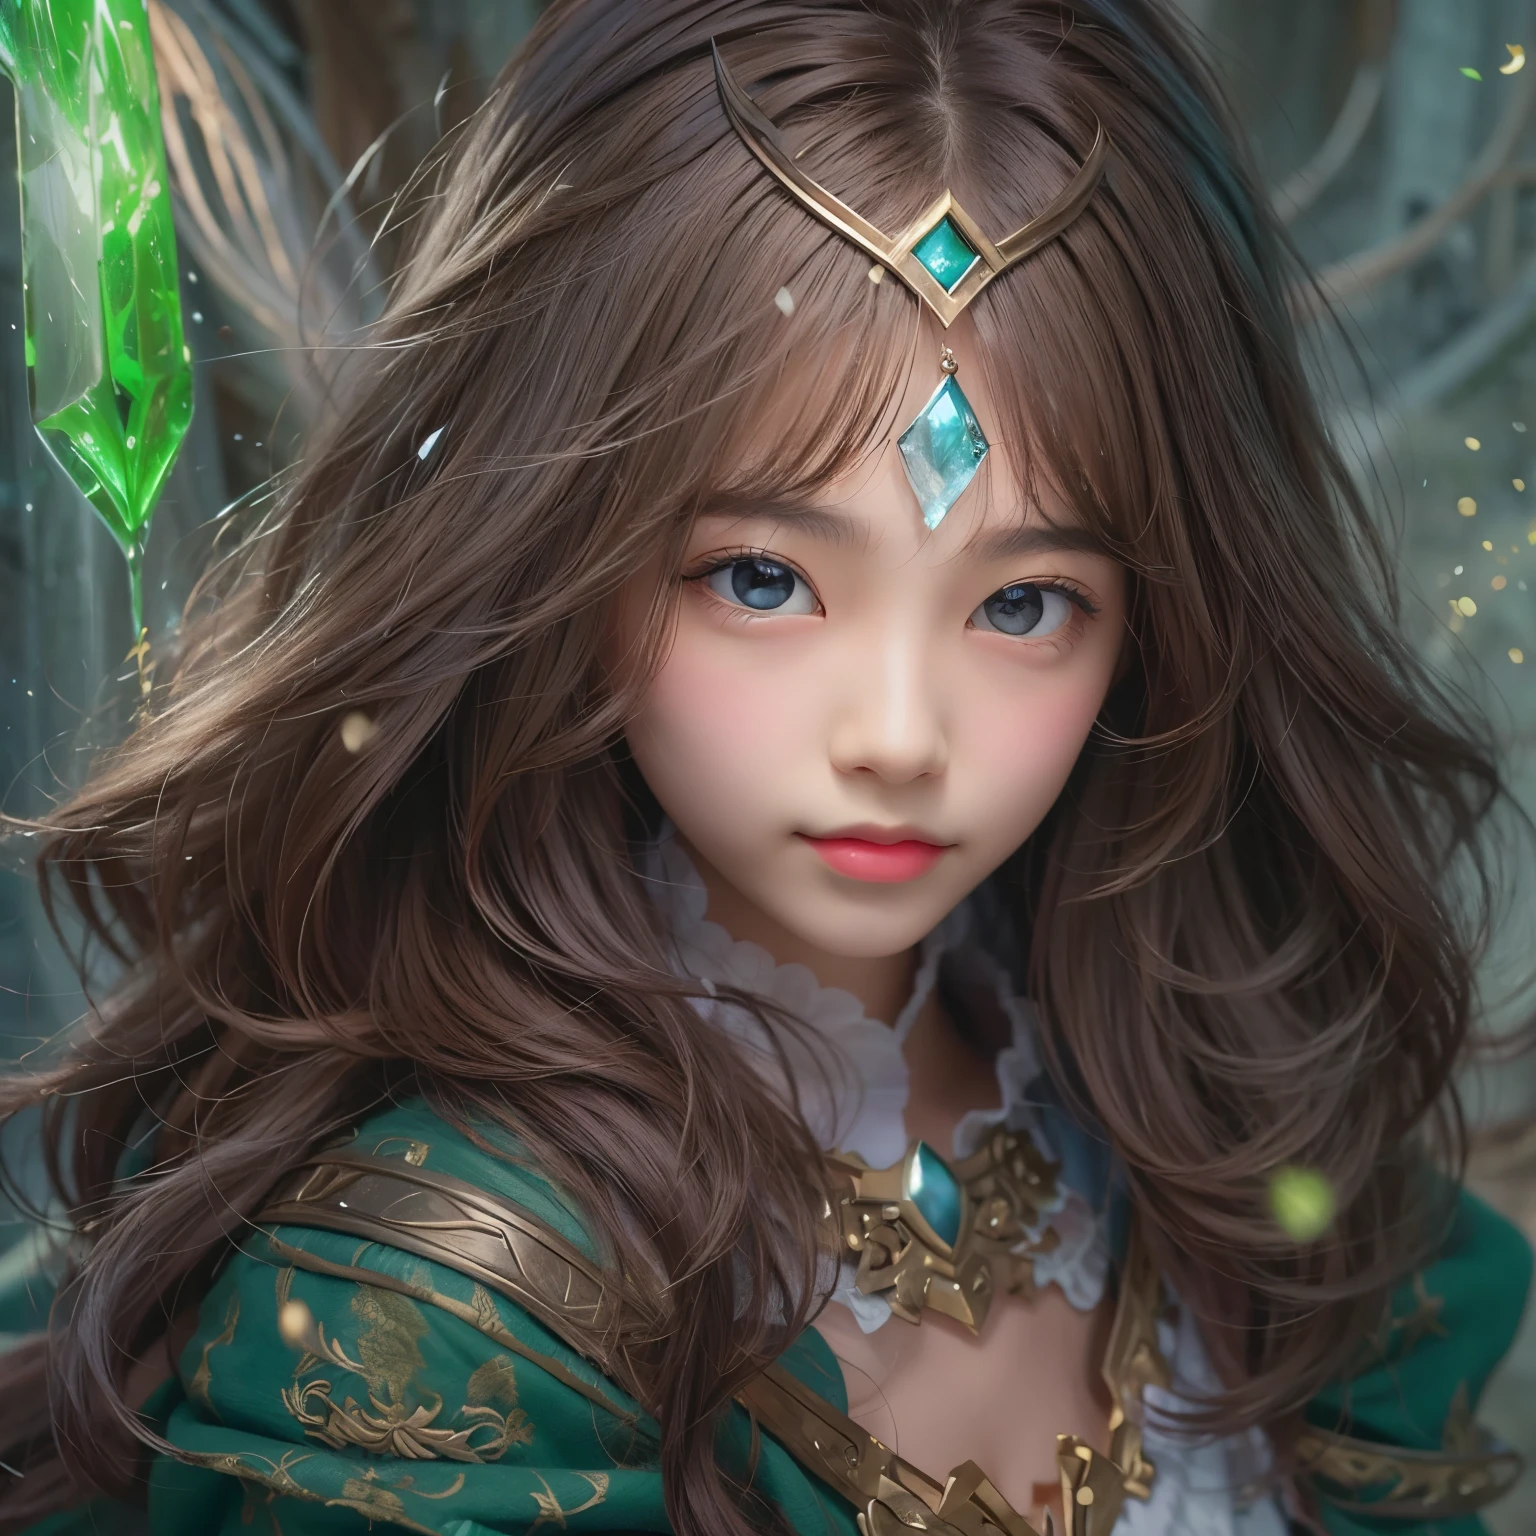 cara detallada, cara linda, Un poderoso hechizo que crea una barrera protectora mágica.., Una mujer que usa magia verde para invocar un escudo mágico es perfecta para un mundo de fantasía...